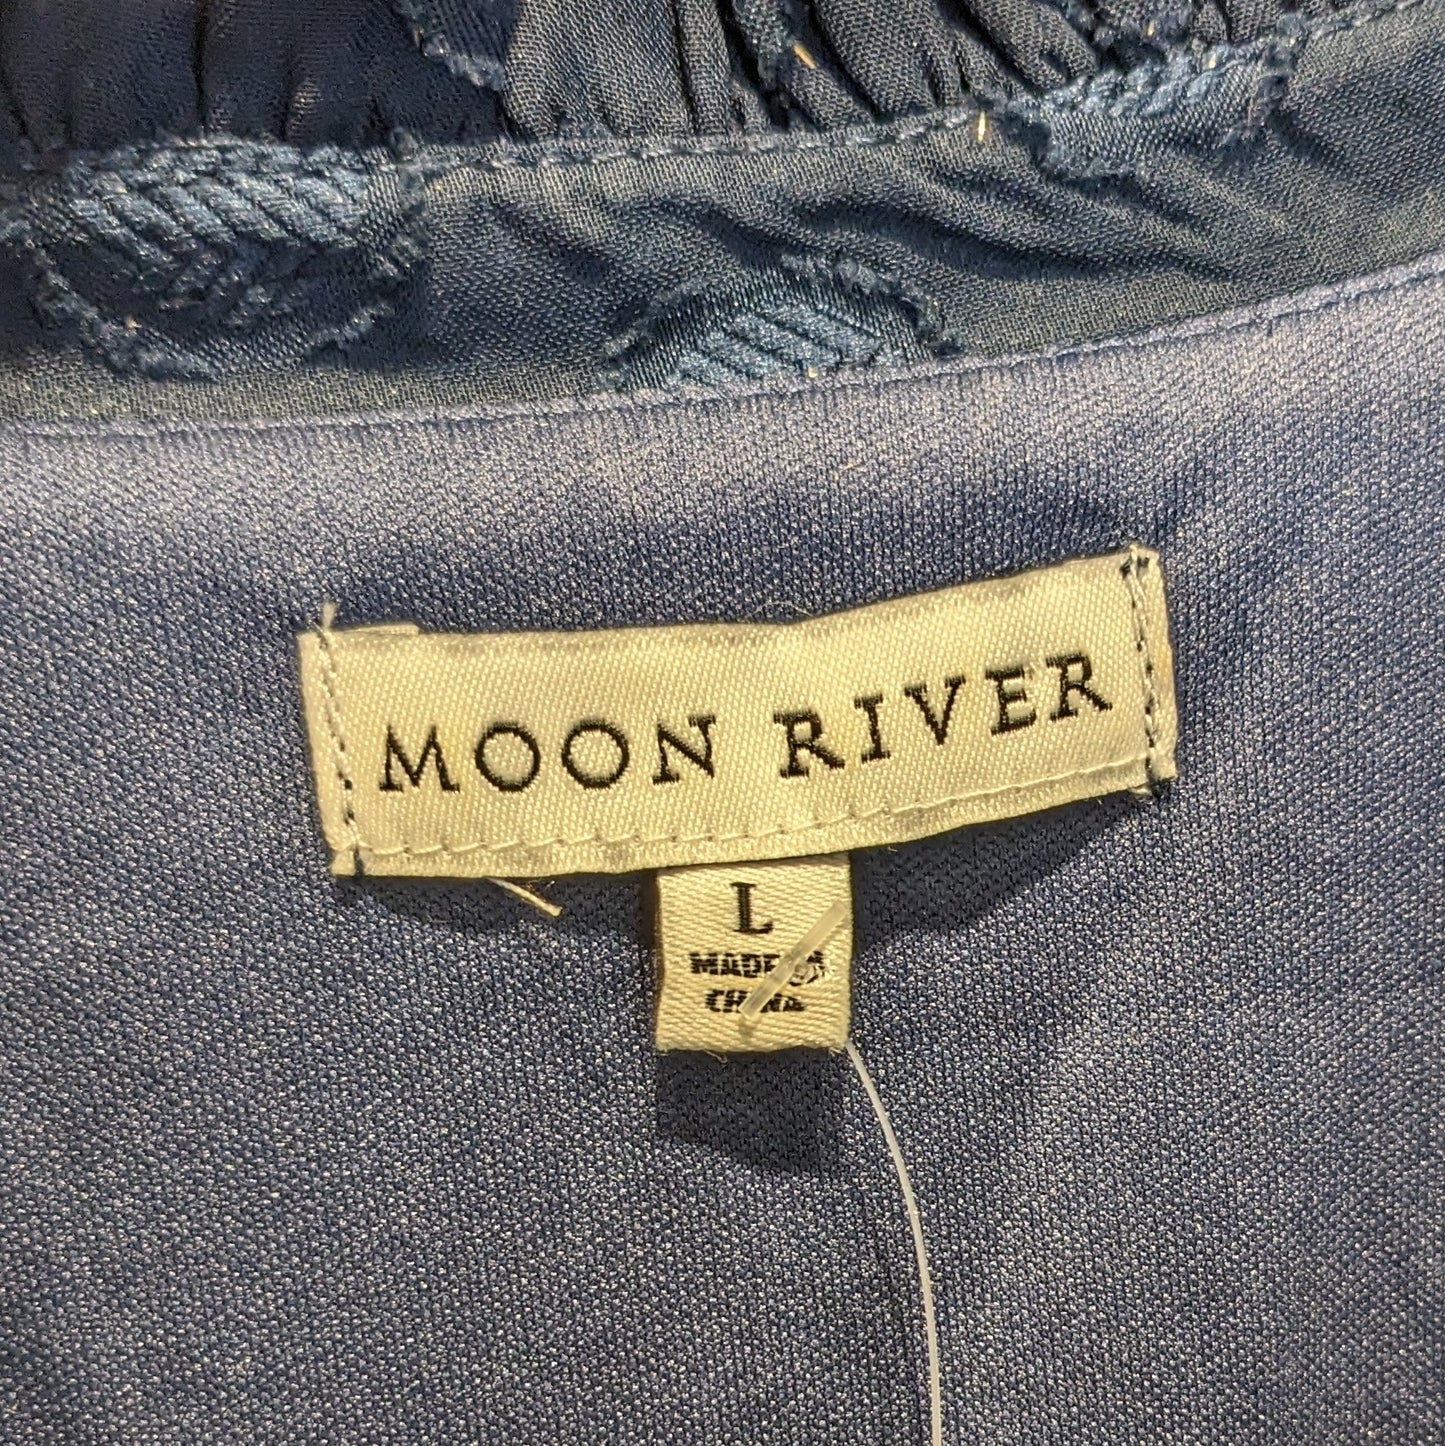 Moon River Maxi Dress Sz L